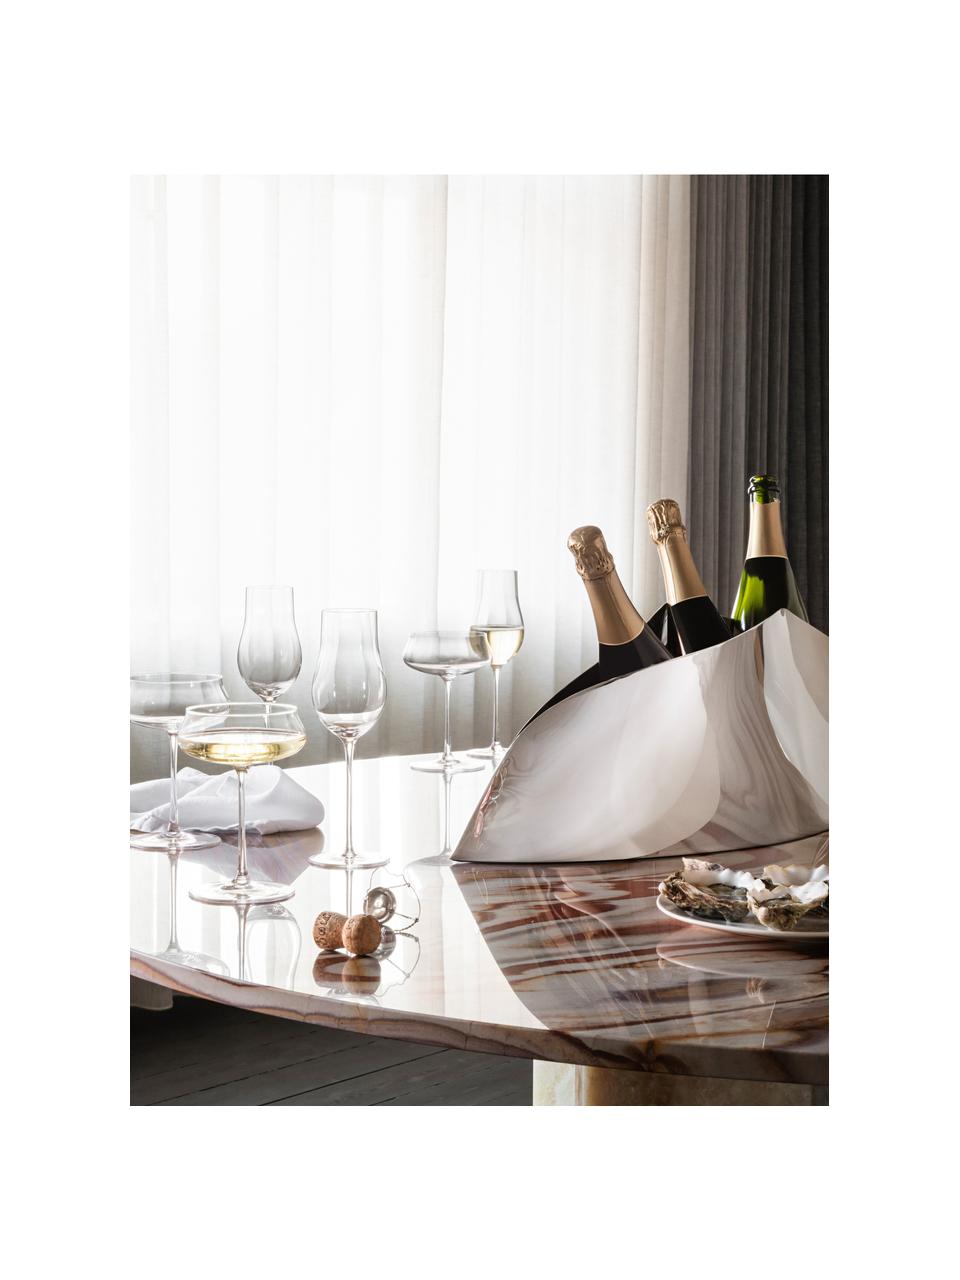 Edelstahl-Champagnerkühler Indulgence in organischer Form, Edelstahl, poliert, Silberfarben, hochglanzpoliert, B 61 x H 22 cm